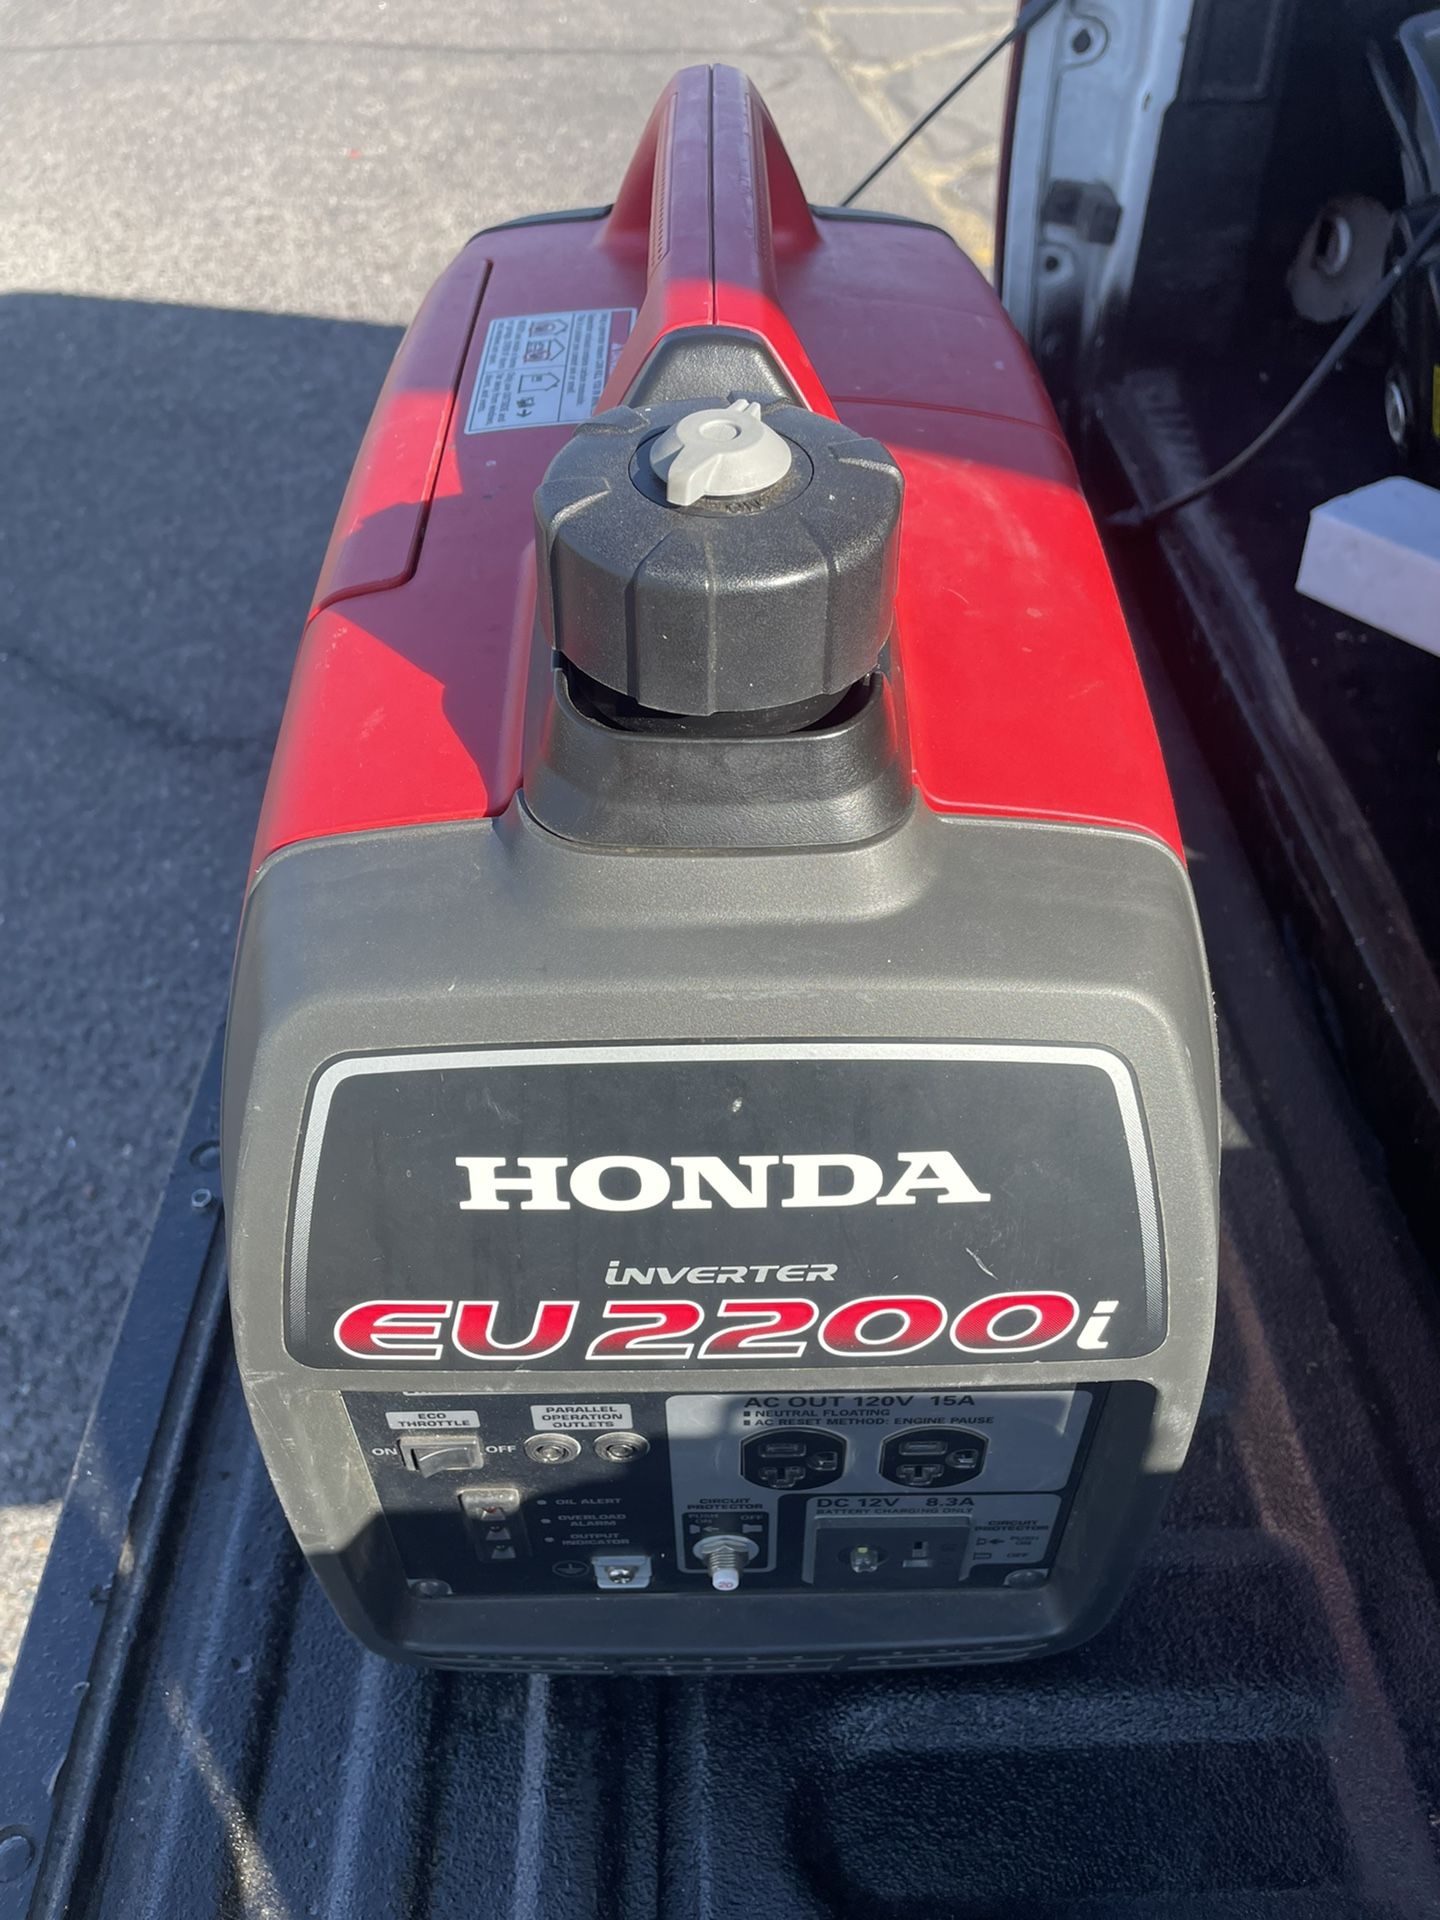 Honda Generator Eu2200